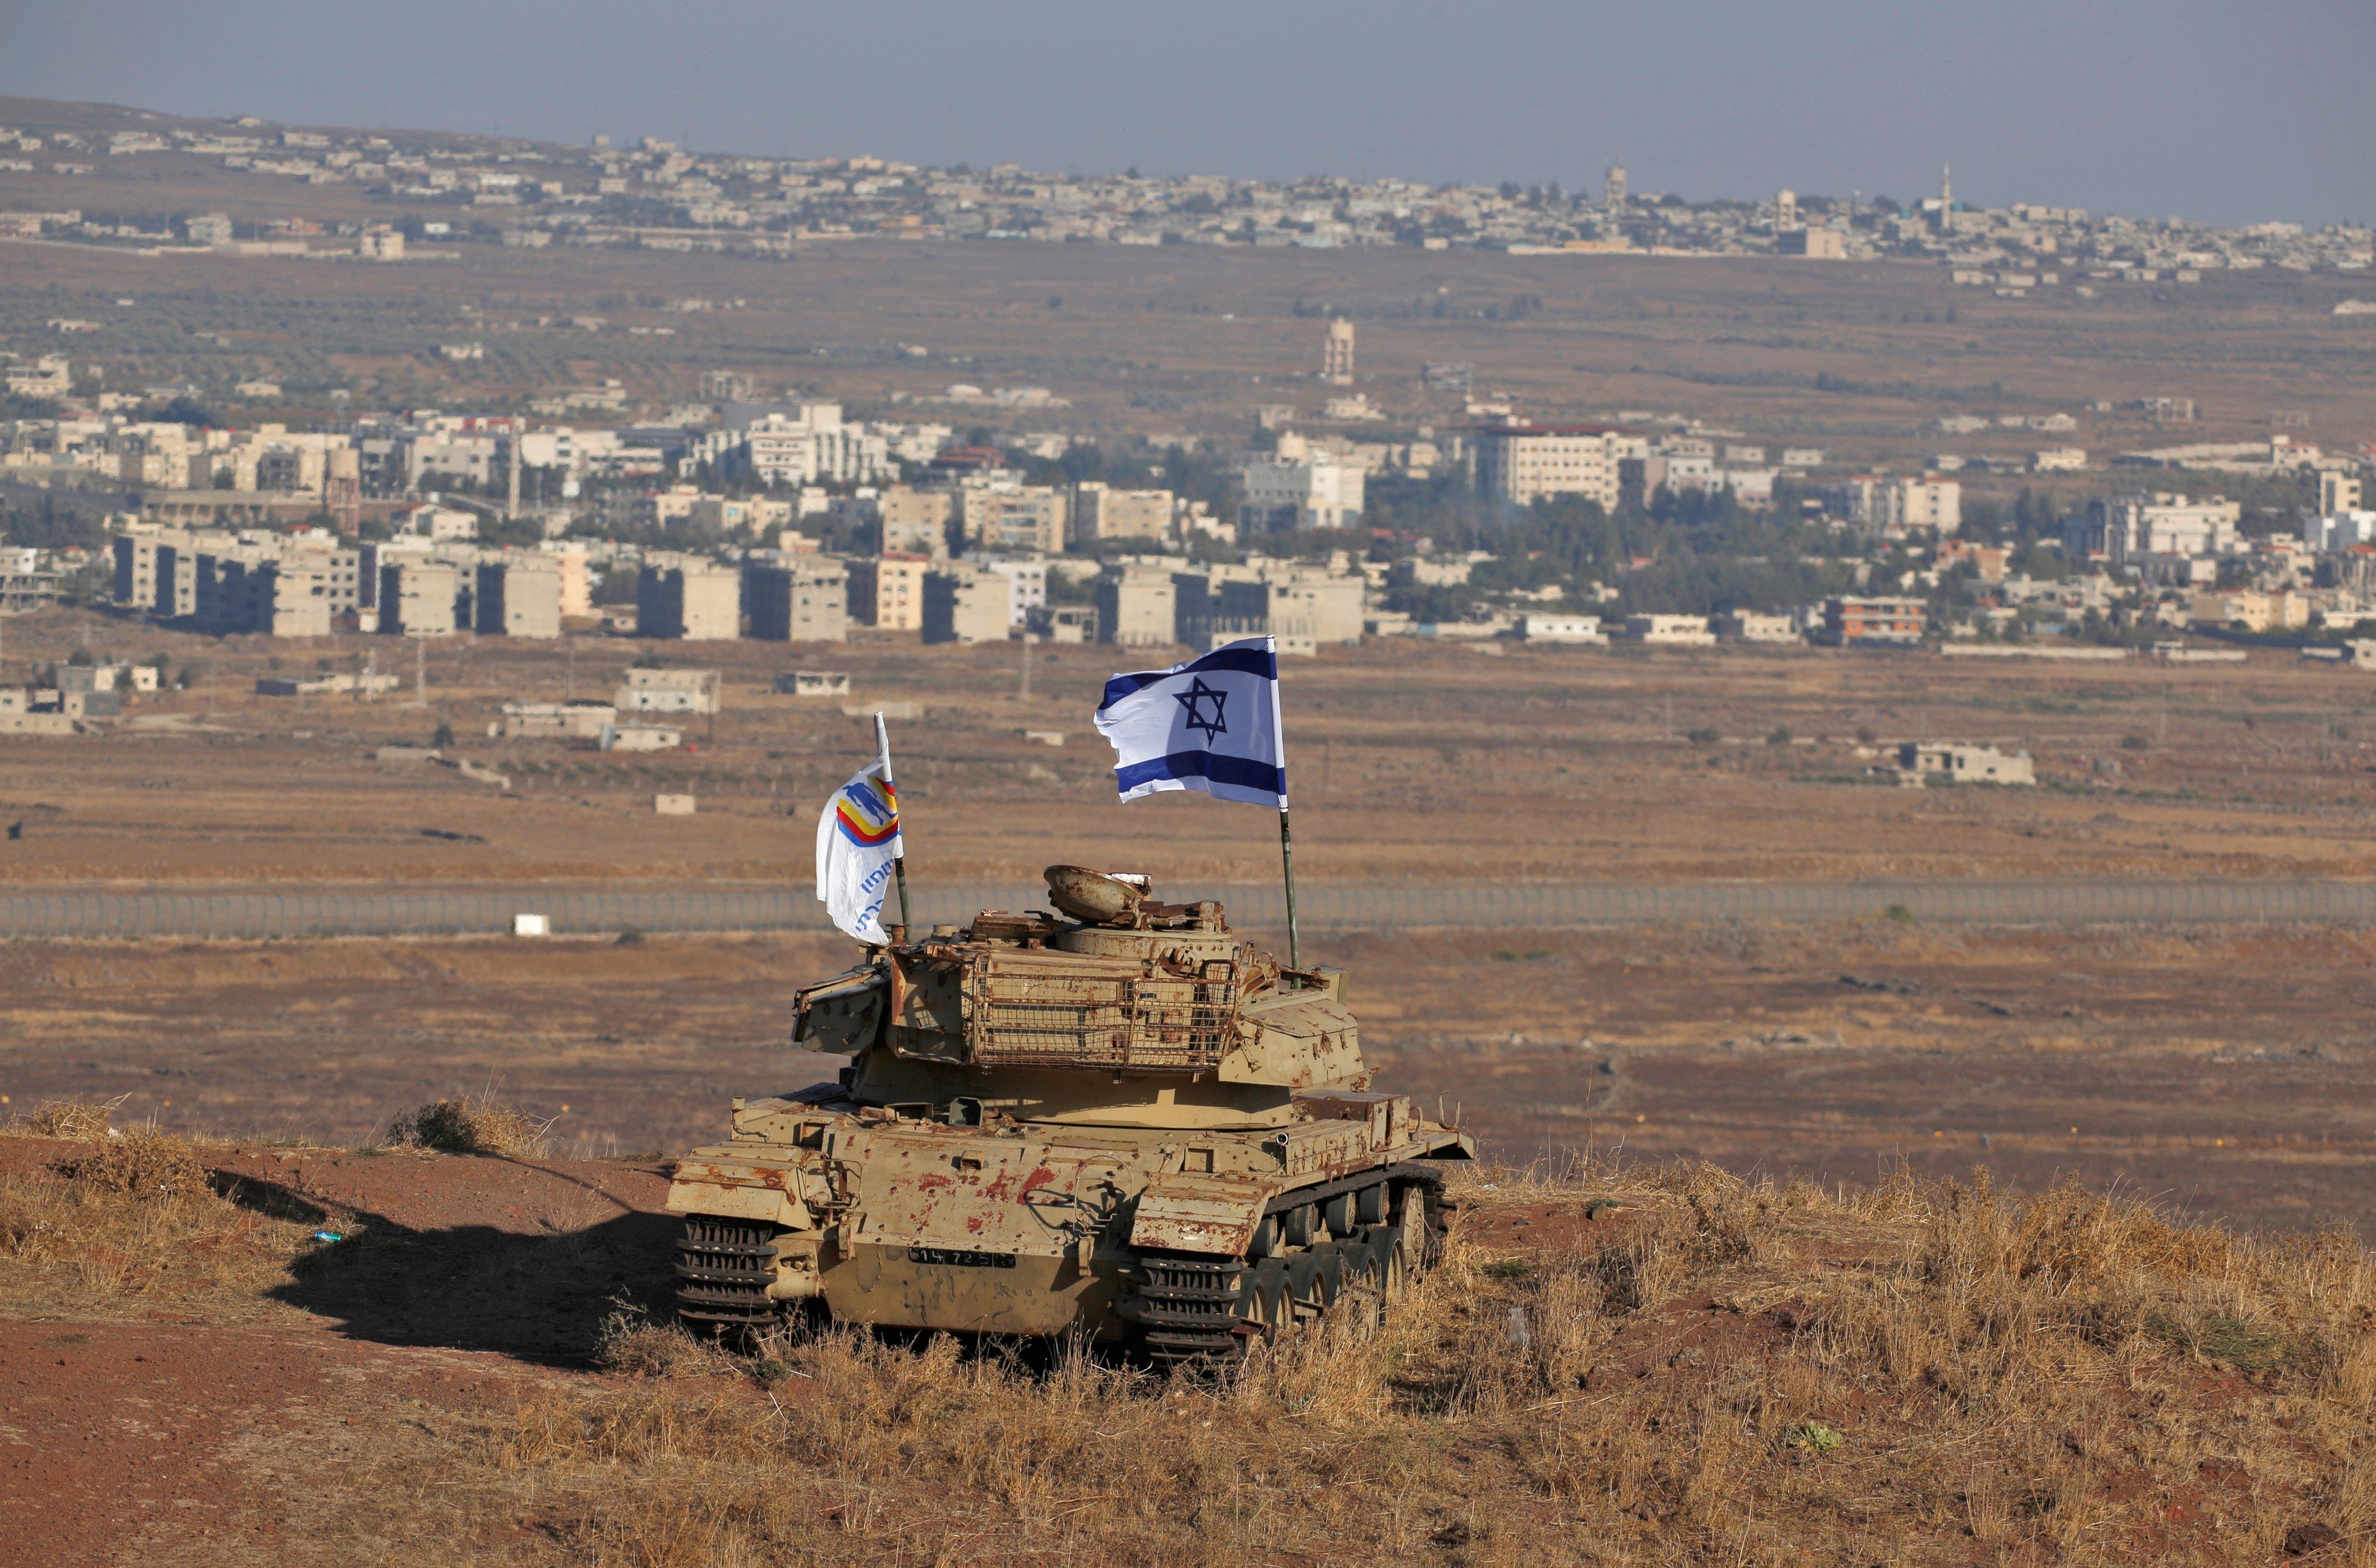 Vrak izraelského tanku ze syrsko-izraelských válek na Golanských výšinách